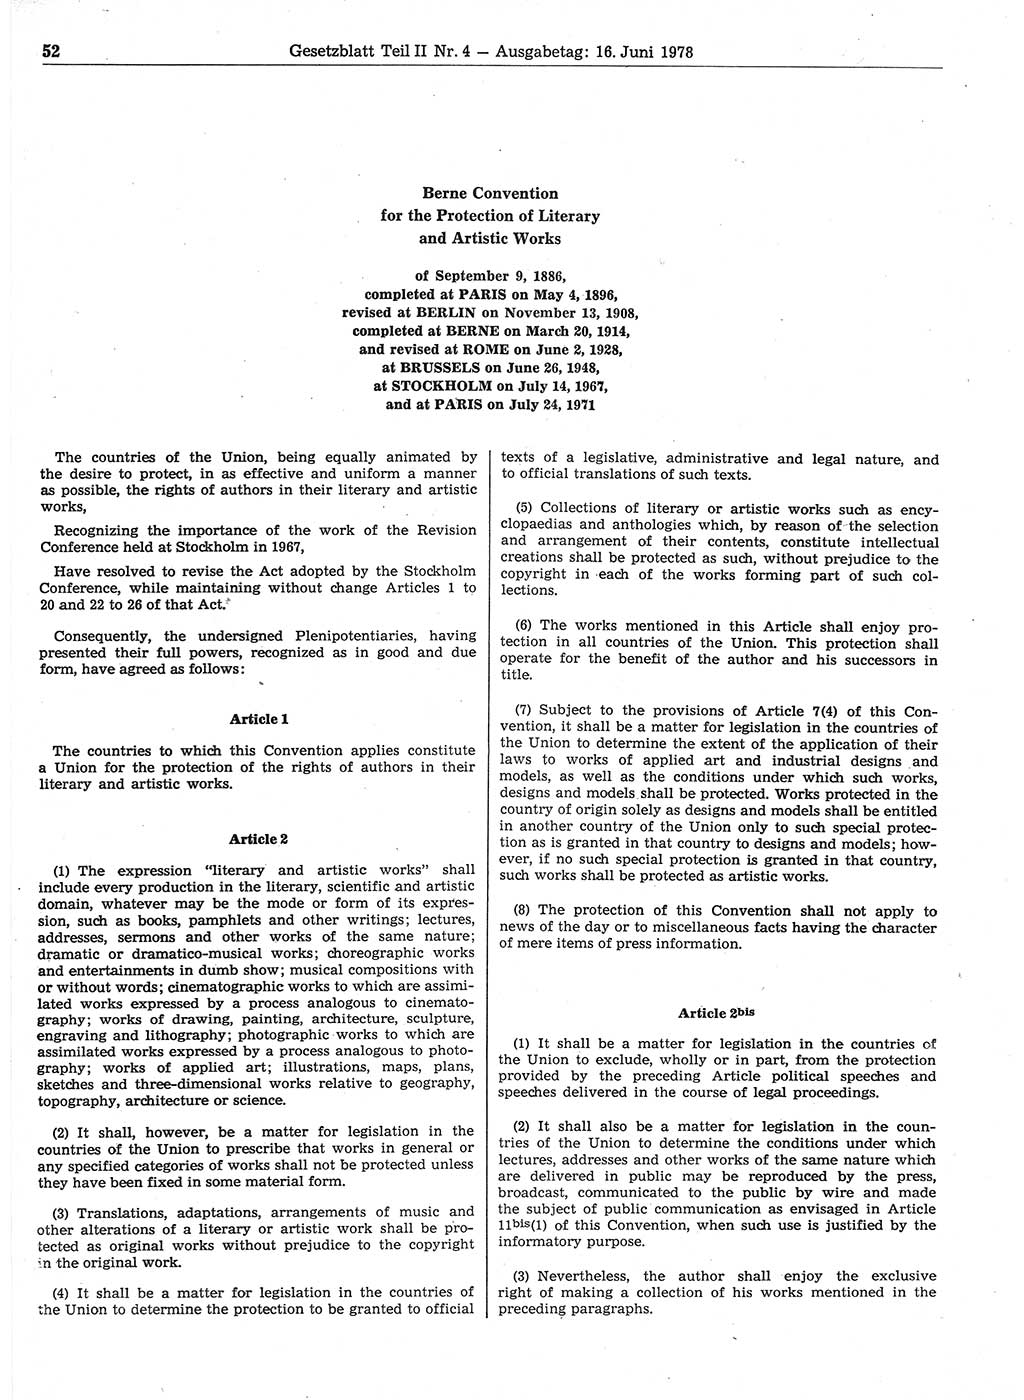 Gesetzblatt (GBl.) der Deutschen Demokratischen Republik (DDR) Teil ⅠⅠ 1978, Seite 52 (GBl. DDR ⅠⅠ 1978, S. 52)